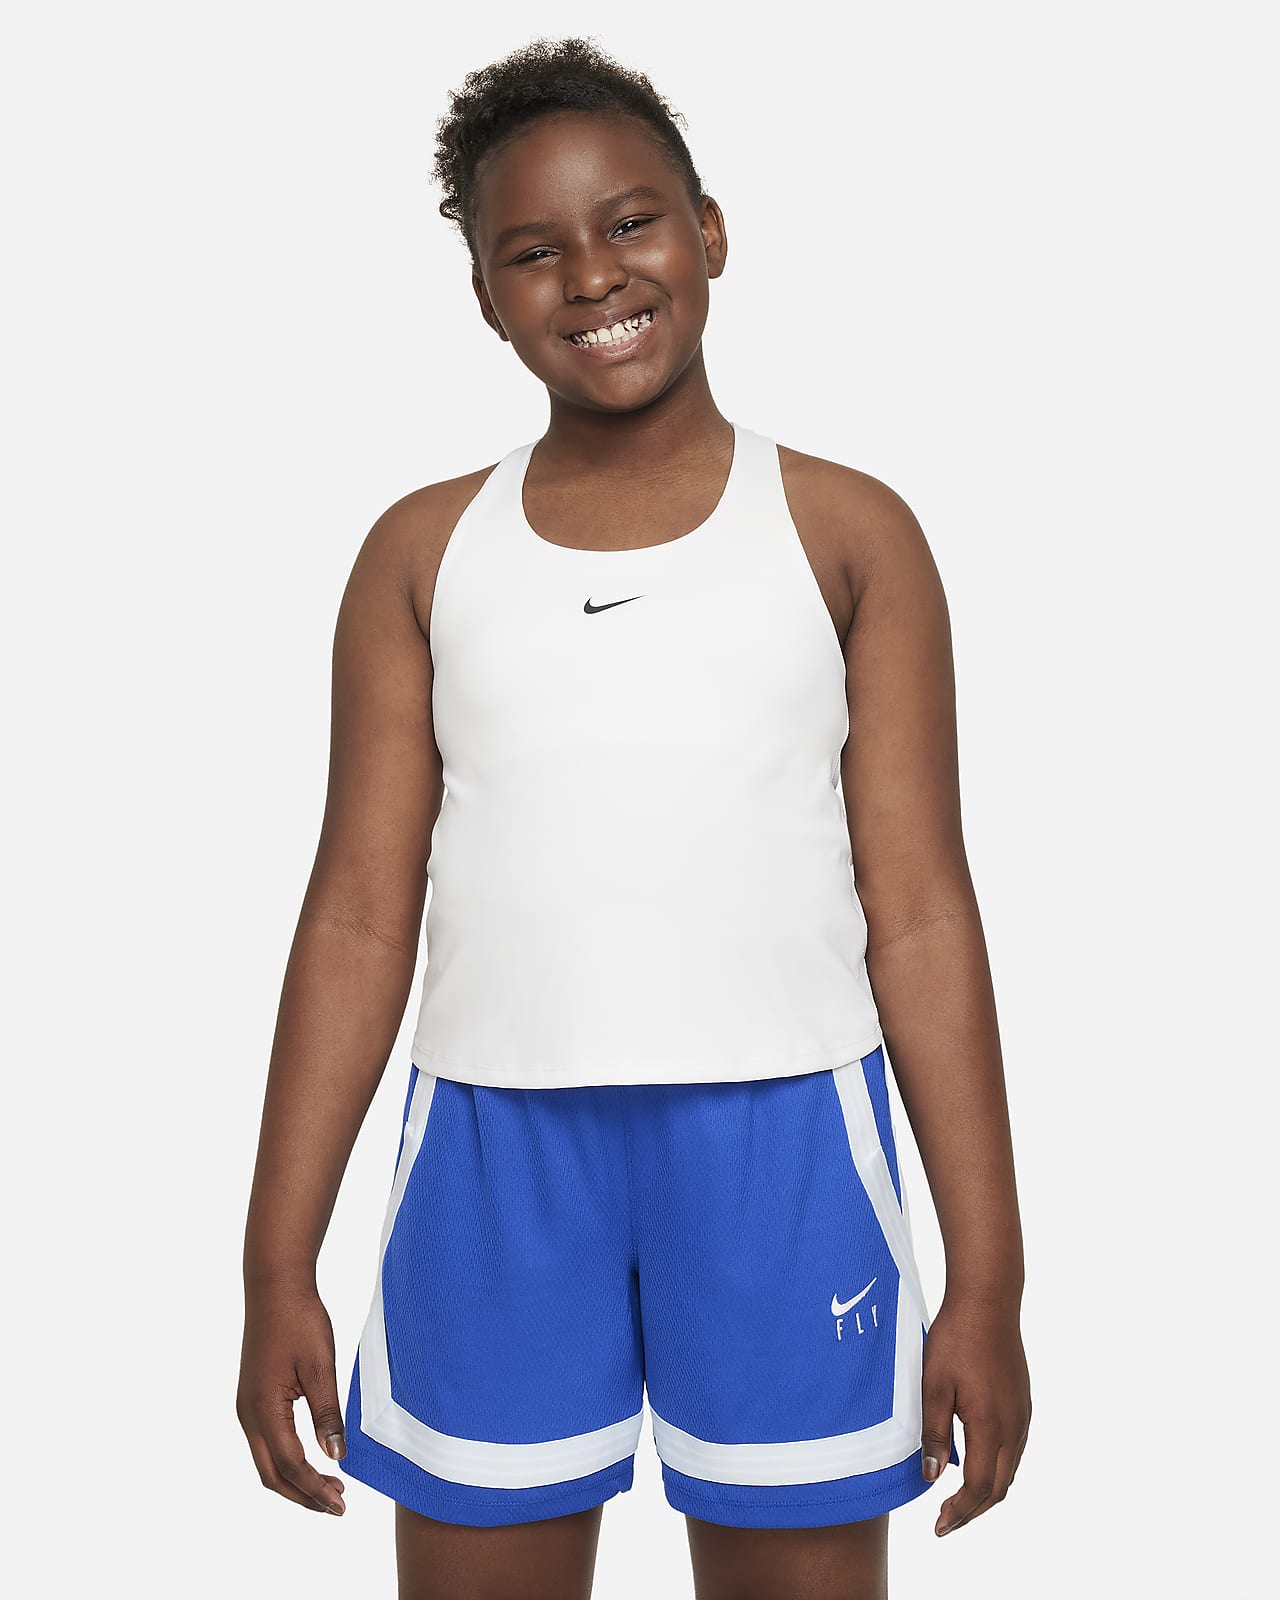 Women’s Nike Dri-Fit Sports Bra Blue, Size Small